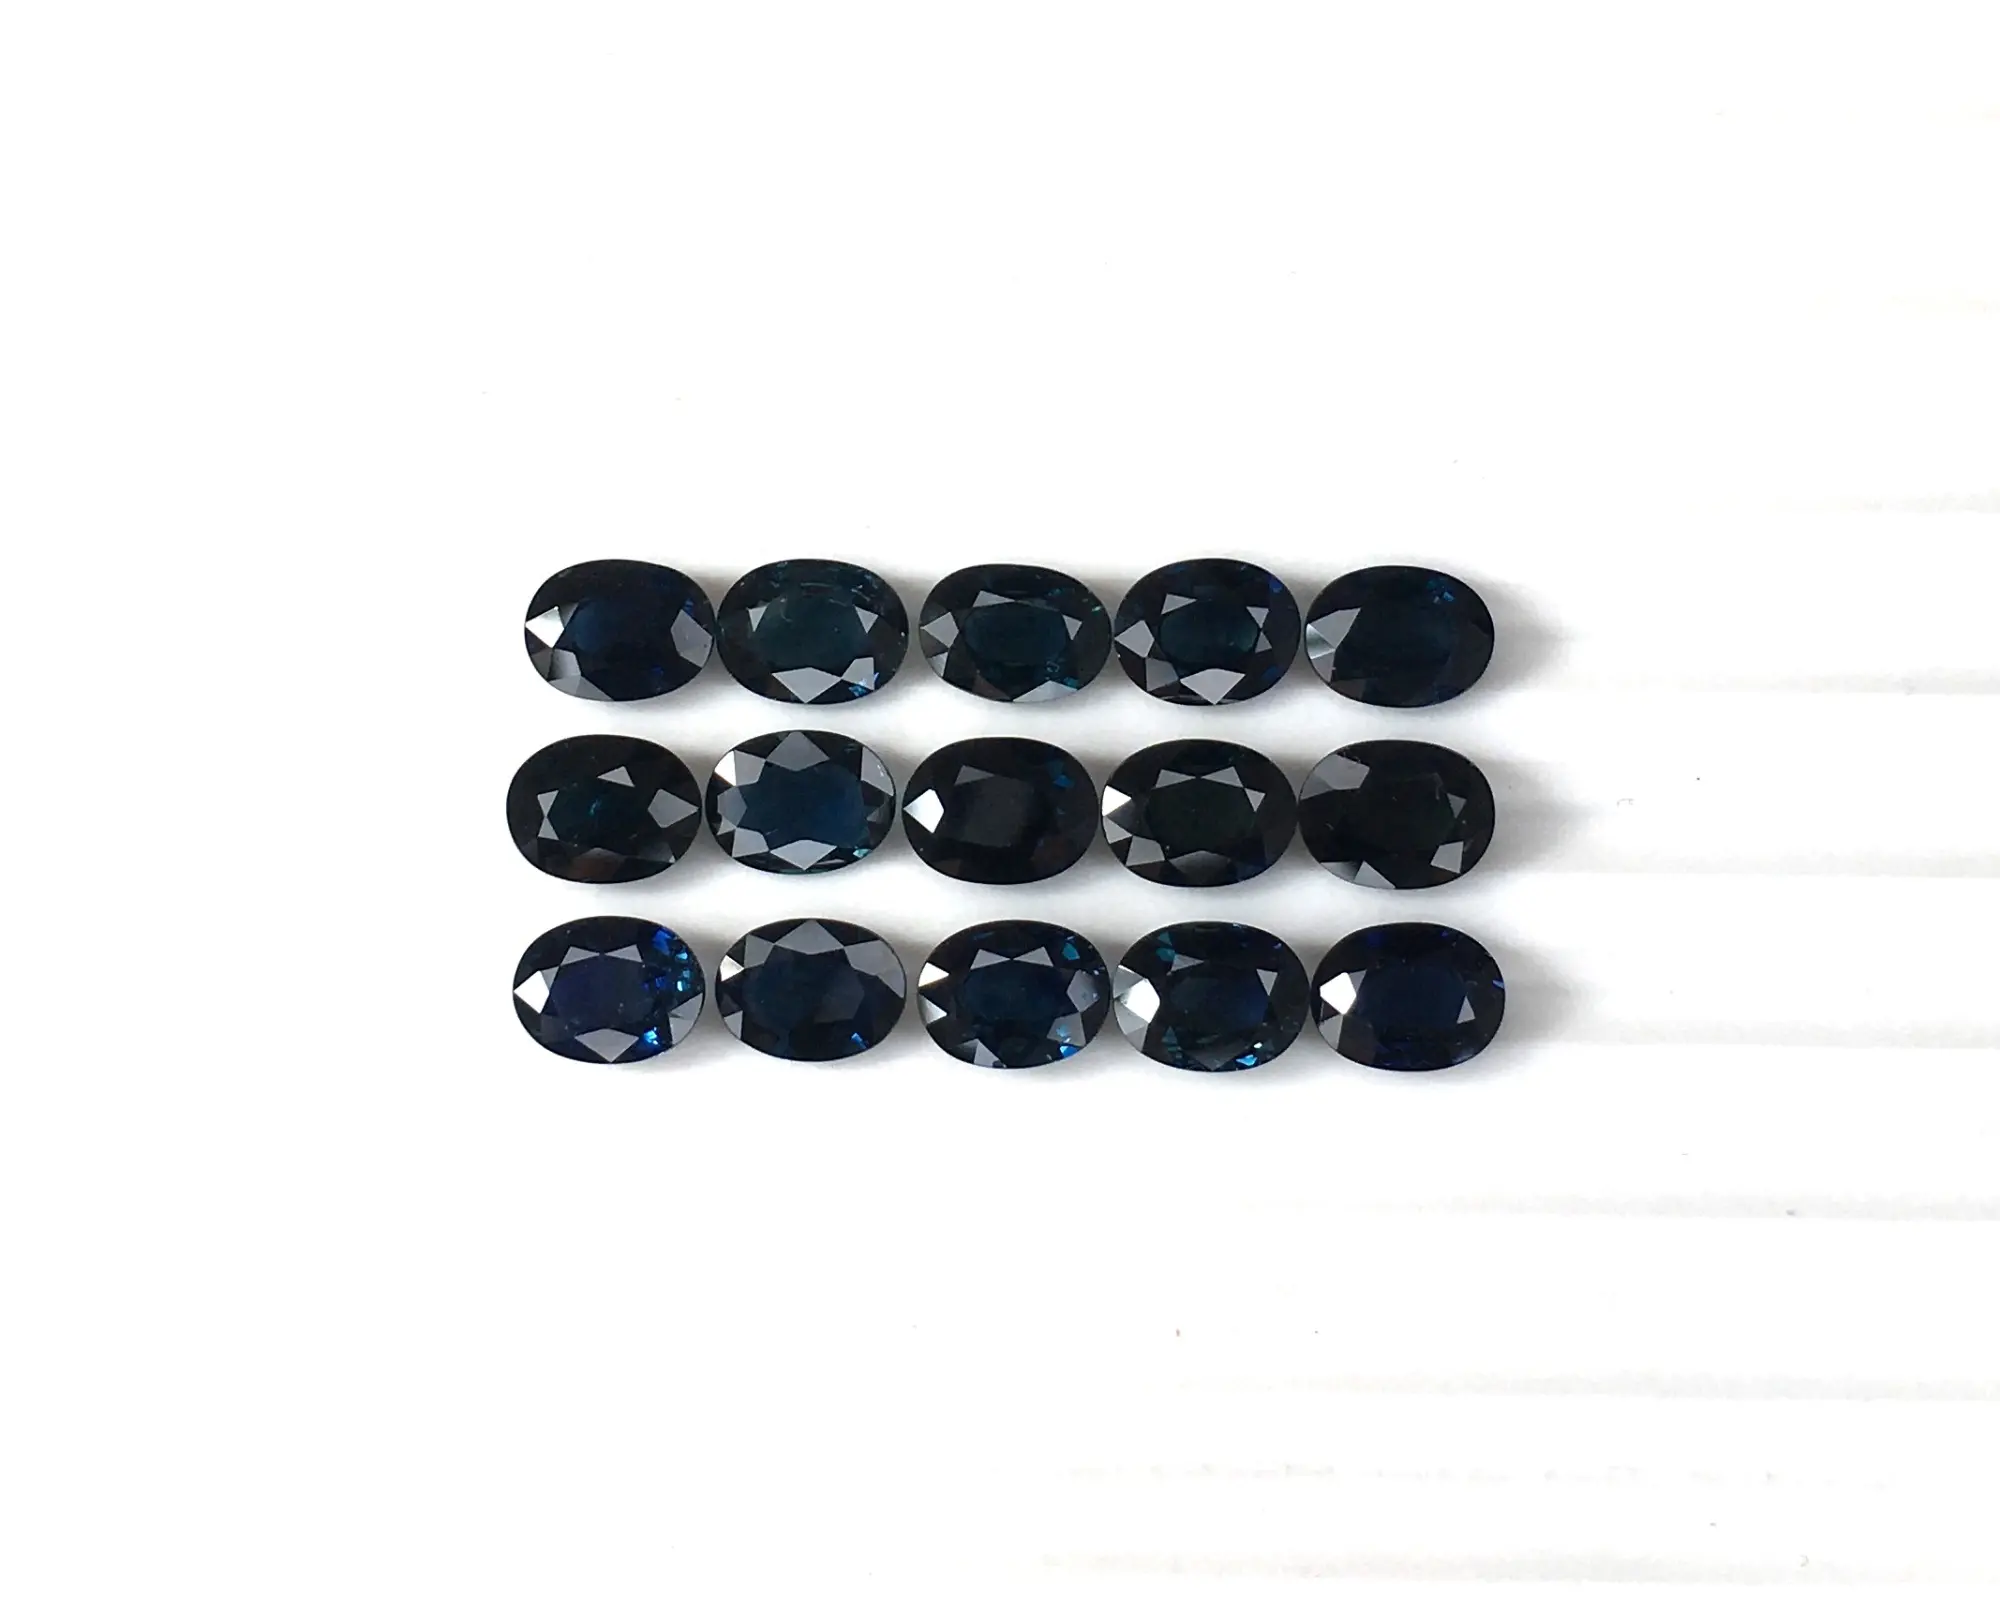 Yüksek talep üzerine doğal değerli mavi safir 6x8mm Oval kesim Faceted taşlar lüks mücevher taşlar yapmak için